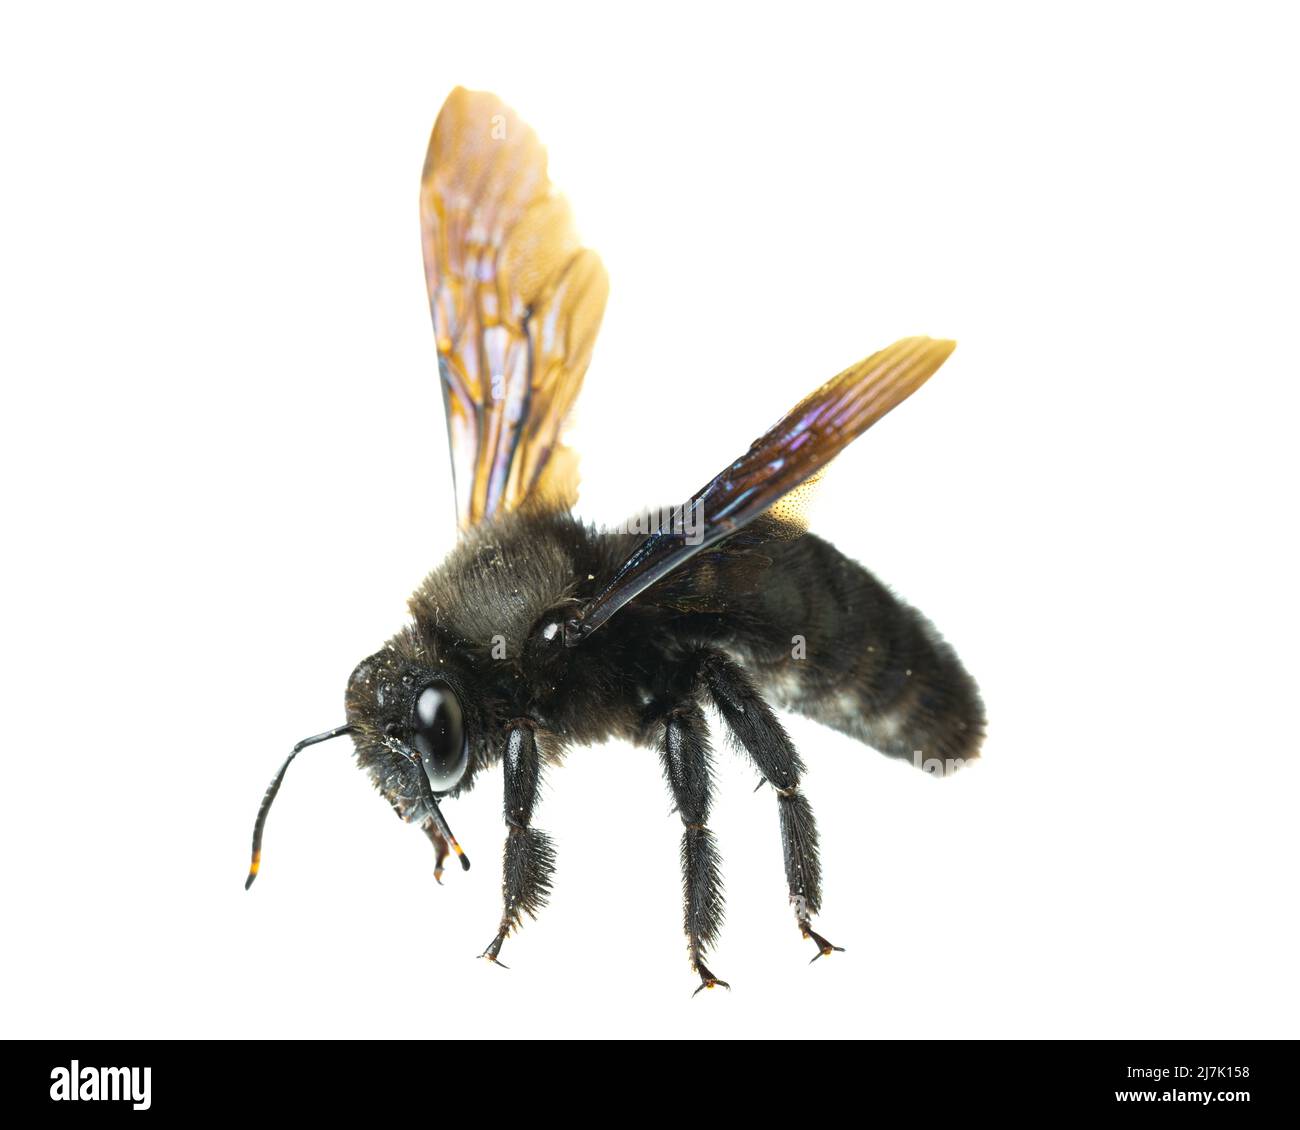 Insectos de europa - abejas: Vista lateral detalles de la abeja carpintero violeta masculina (Xylocopa violacea alemán Blauschwarze Holzbiene) aislado en el backgrou blanco Foto de stock